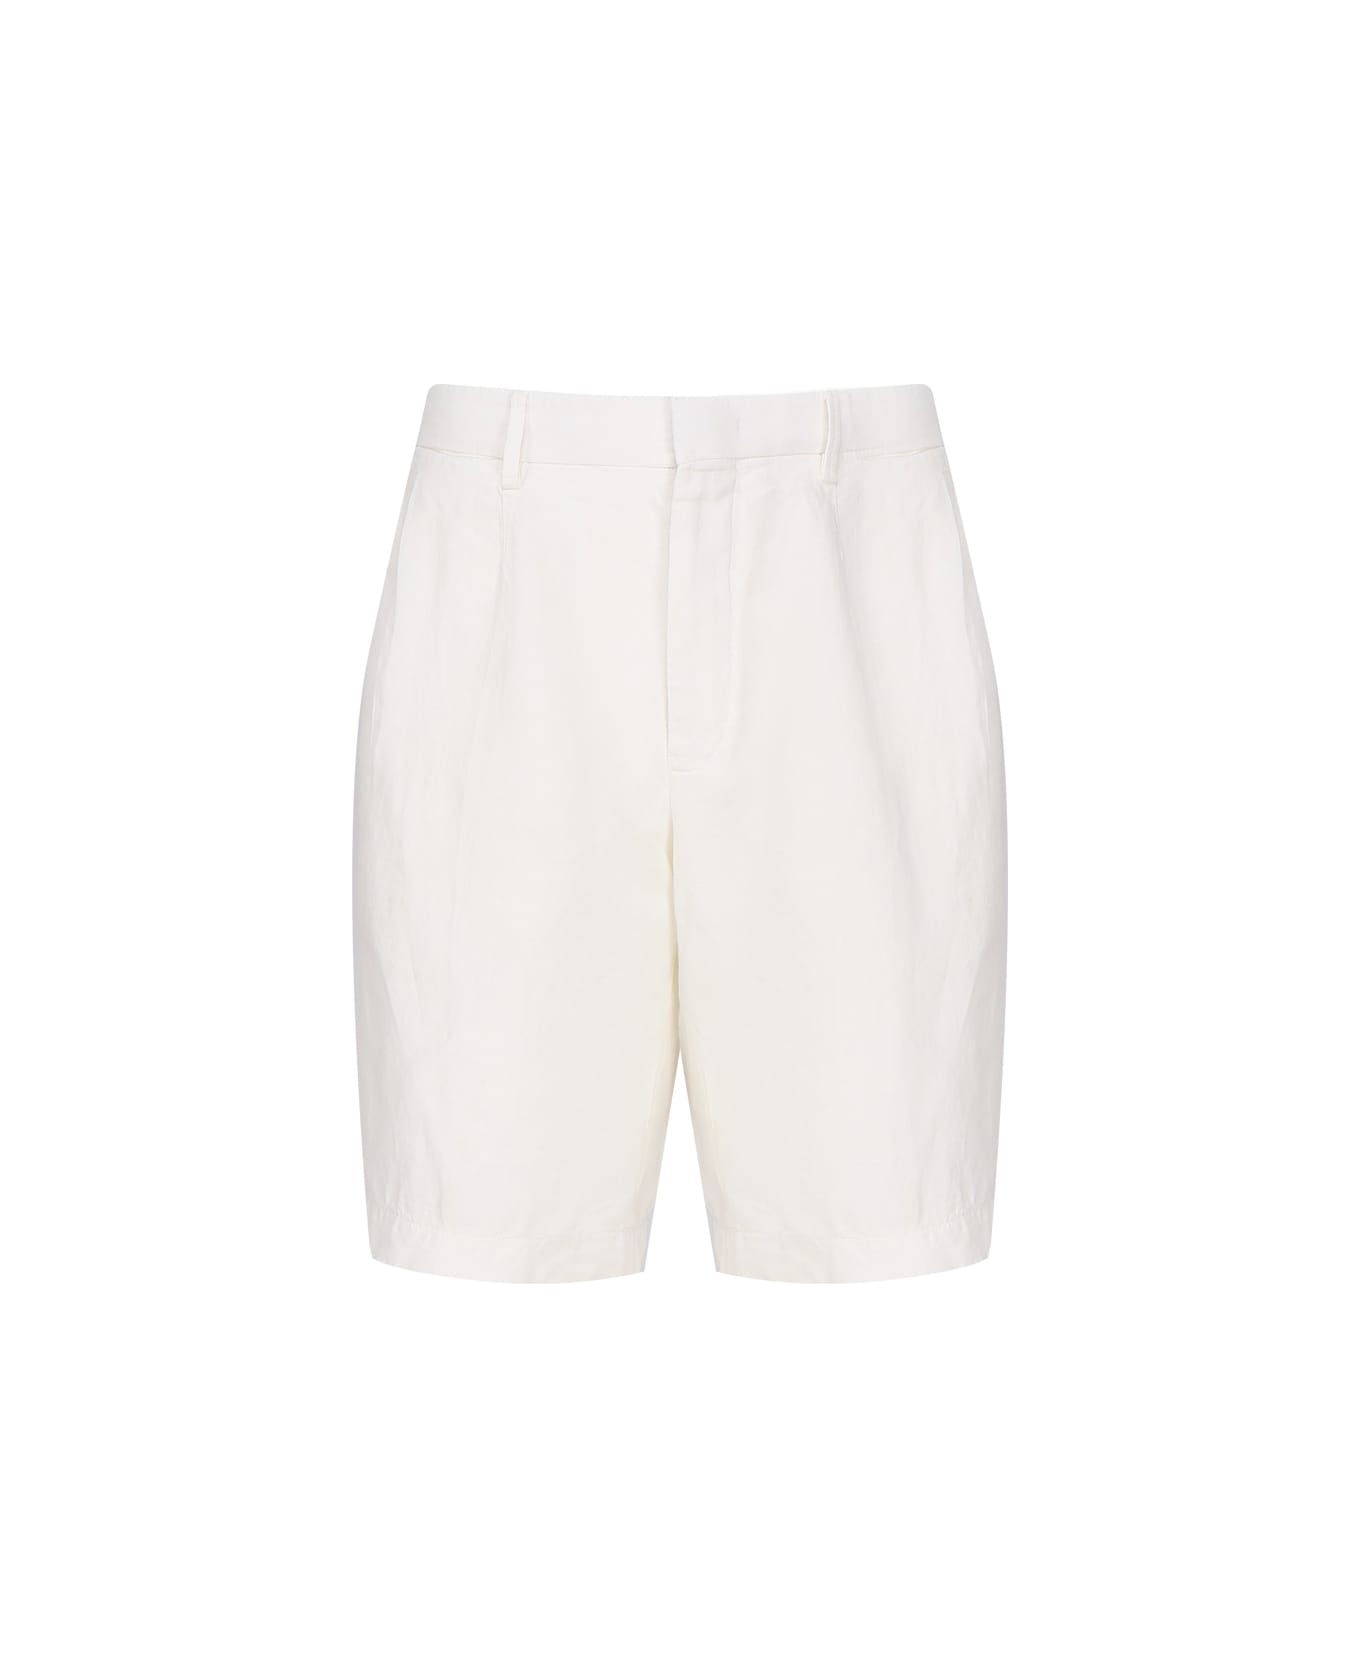 Zegna Linen Shorts - White